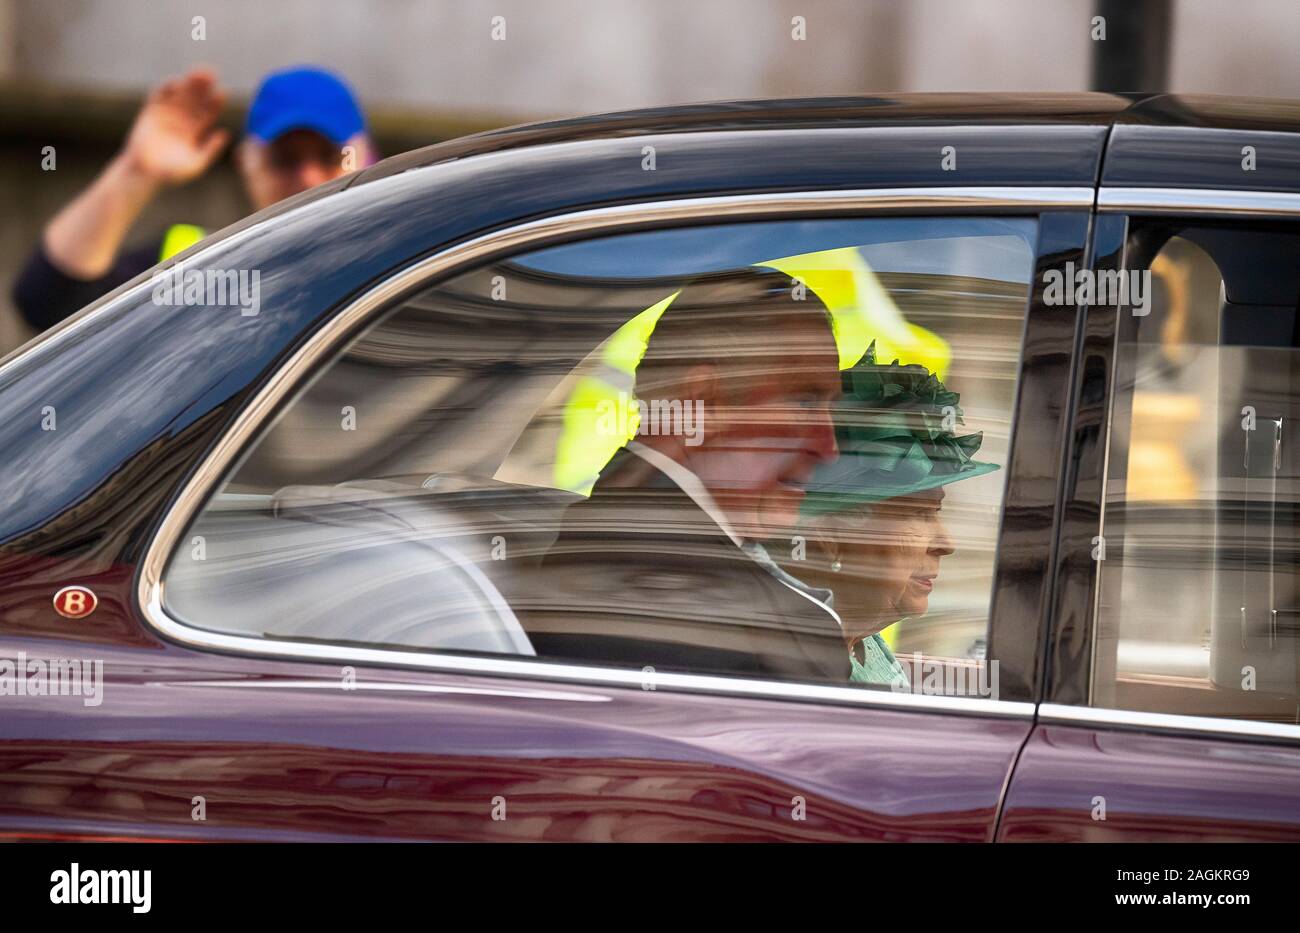 Whitehall, Londra, Regno Unito. 19 dicembre 2019. La regina accompagnata dal principe Carlo assiste lo stato apertura del Parlamento per consegnare la regina del discorso, viaggiando in auto. Credito: Malcolm Park/Alamy. Foto Stock